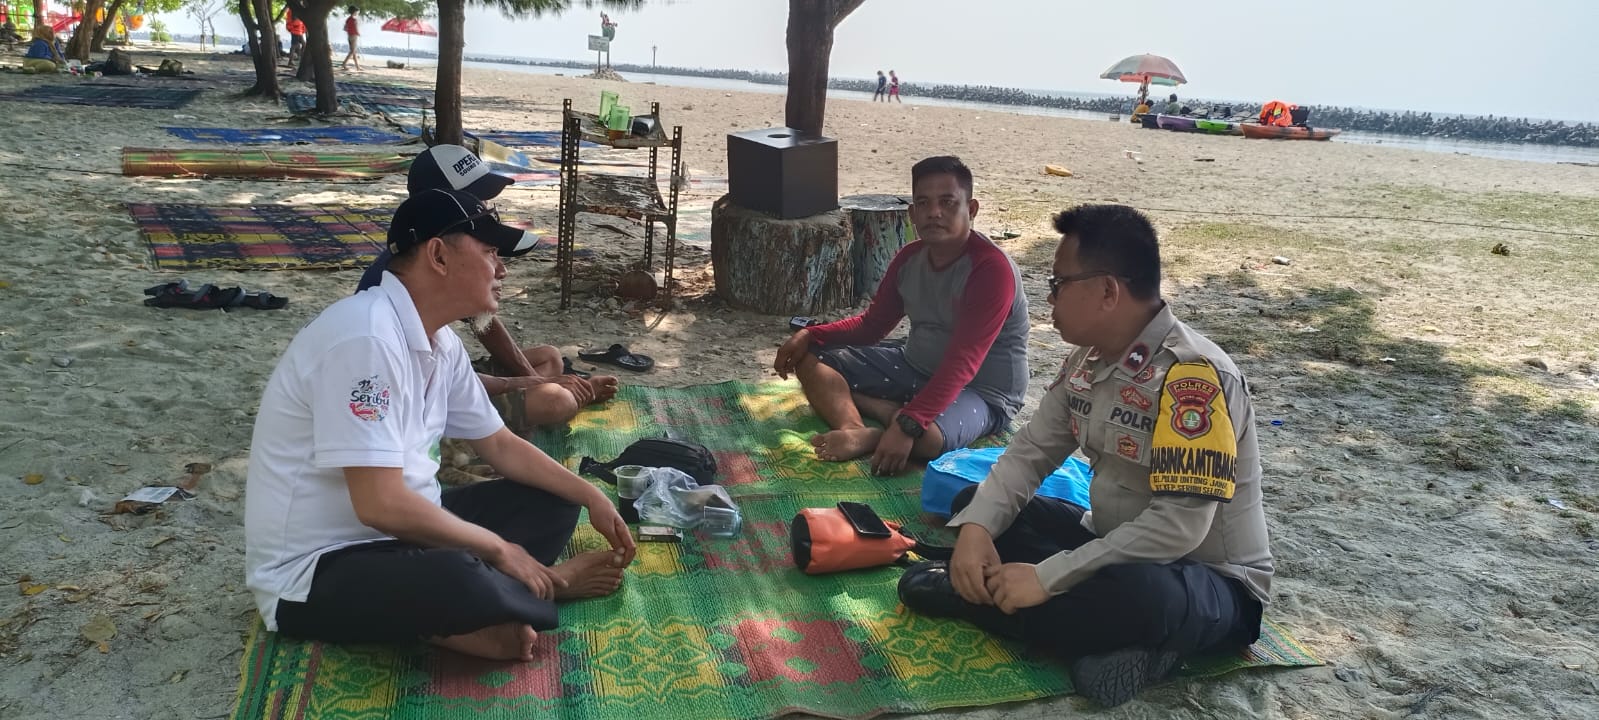 Bhabinkamtibmas Pulau Untung Jawa Intensif Sambangi Warga, Berhasil Tingkatkan Keamanan dan Kedekatan Komunitas